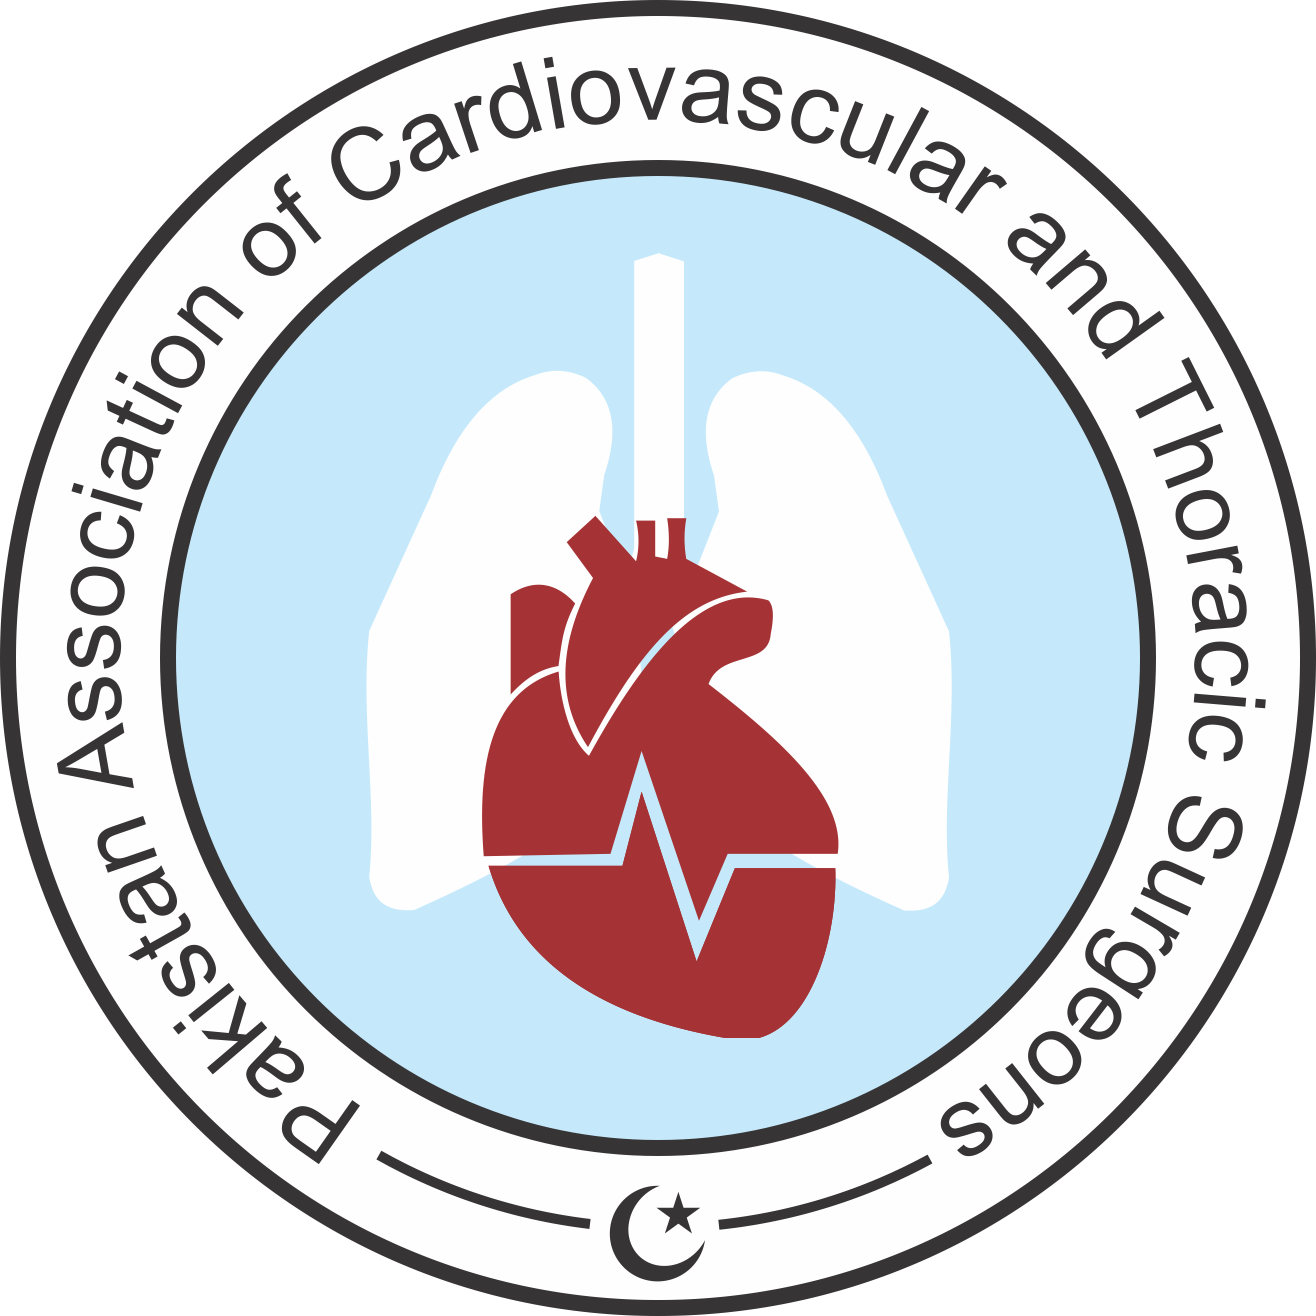 Pakistan Association of Cardiovascular and Thoracic Surgeons